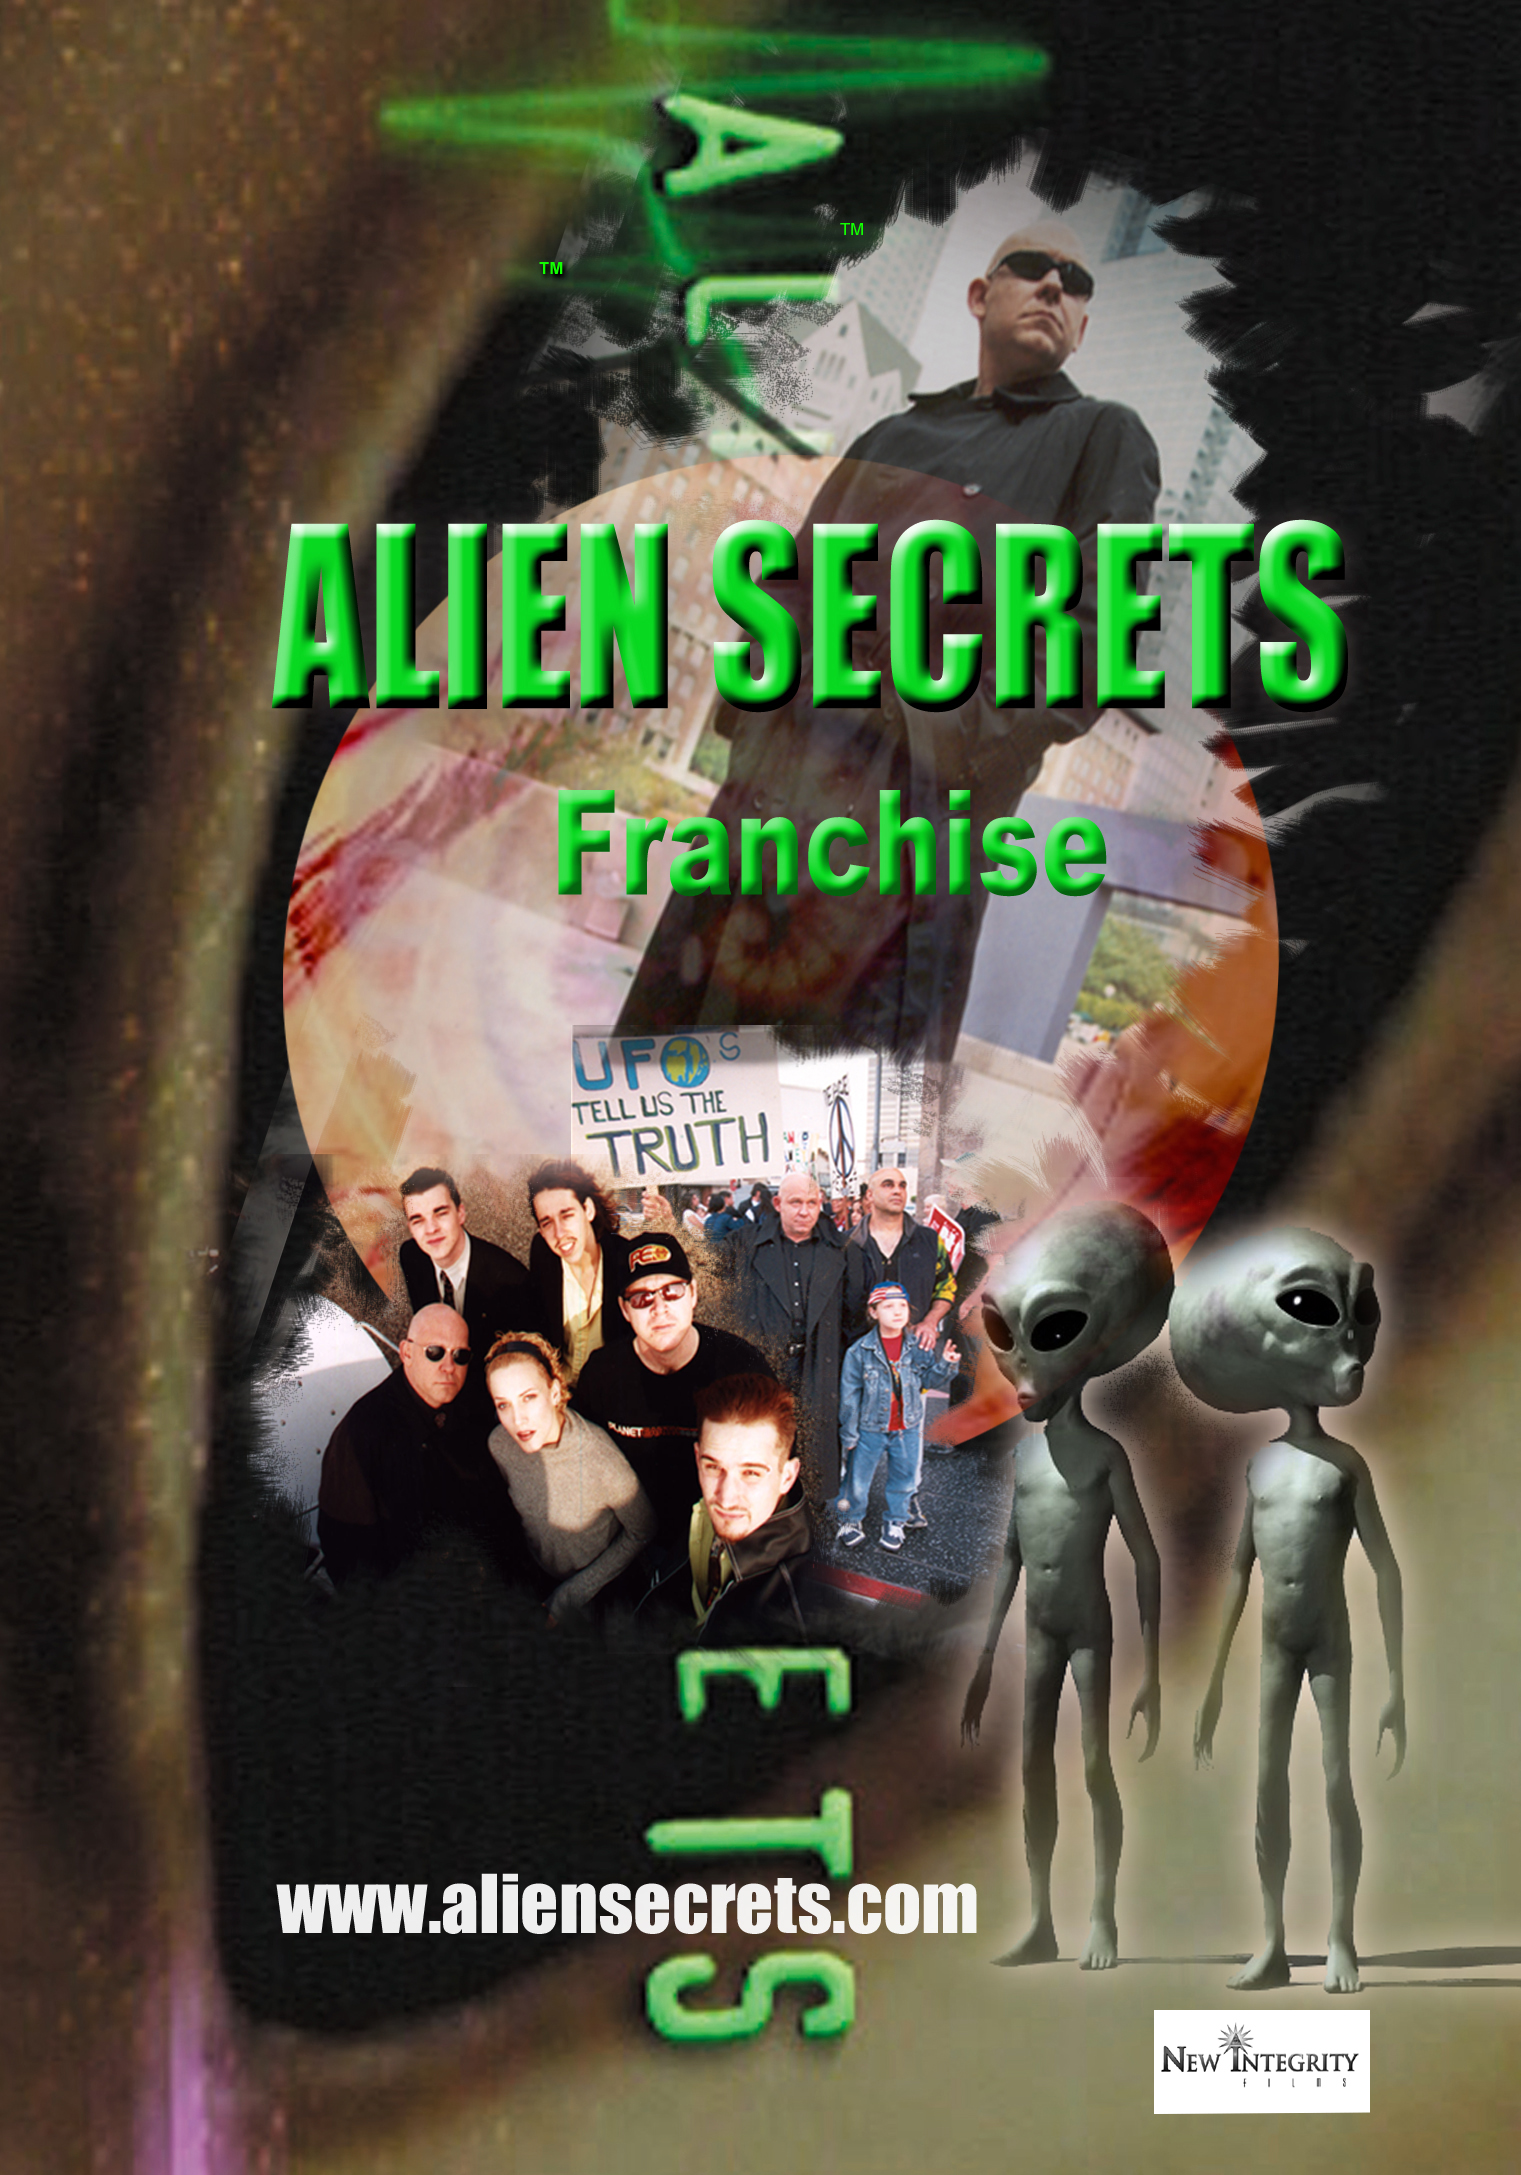 Alien Secrets franchise promo